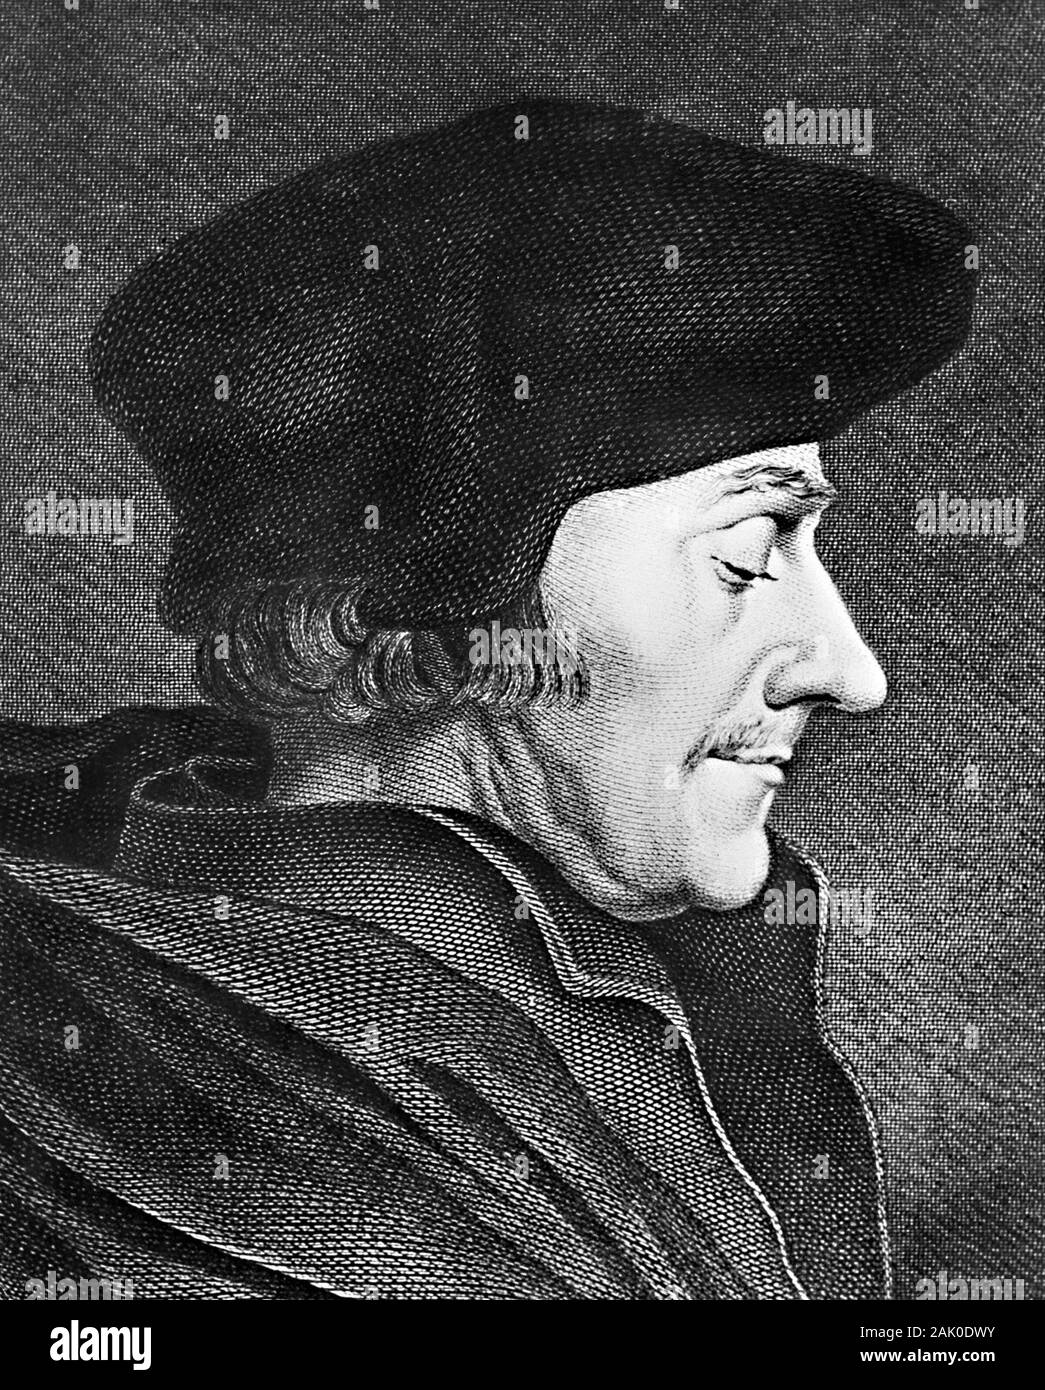 Gravure de Desiderius Erasmus Roterodamus (1466-1536), habituellement appelé Erasme de Rotterdam ou simplement d'Erasmus. Programme Erasmus était un philosophe néerlandais, traducteur de la Bible, et Christian humanist largement considéré comme l'un des plus grands savants de la renaissance du nord. Banque D'Images